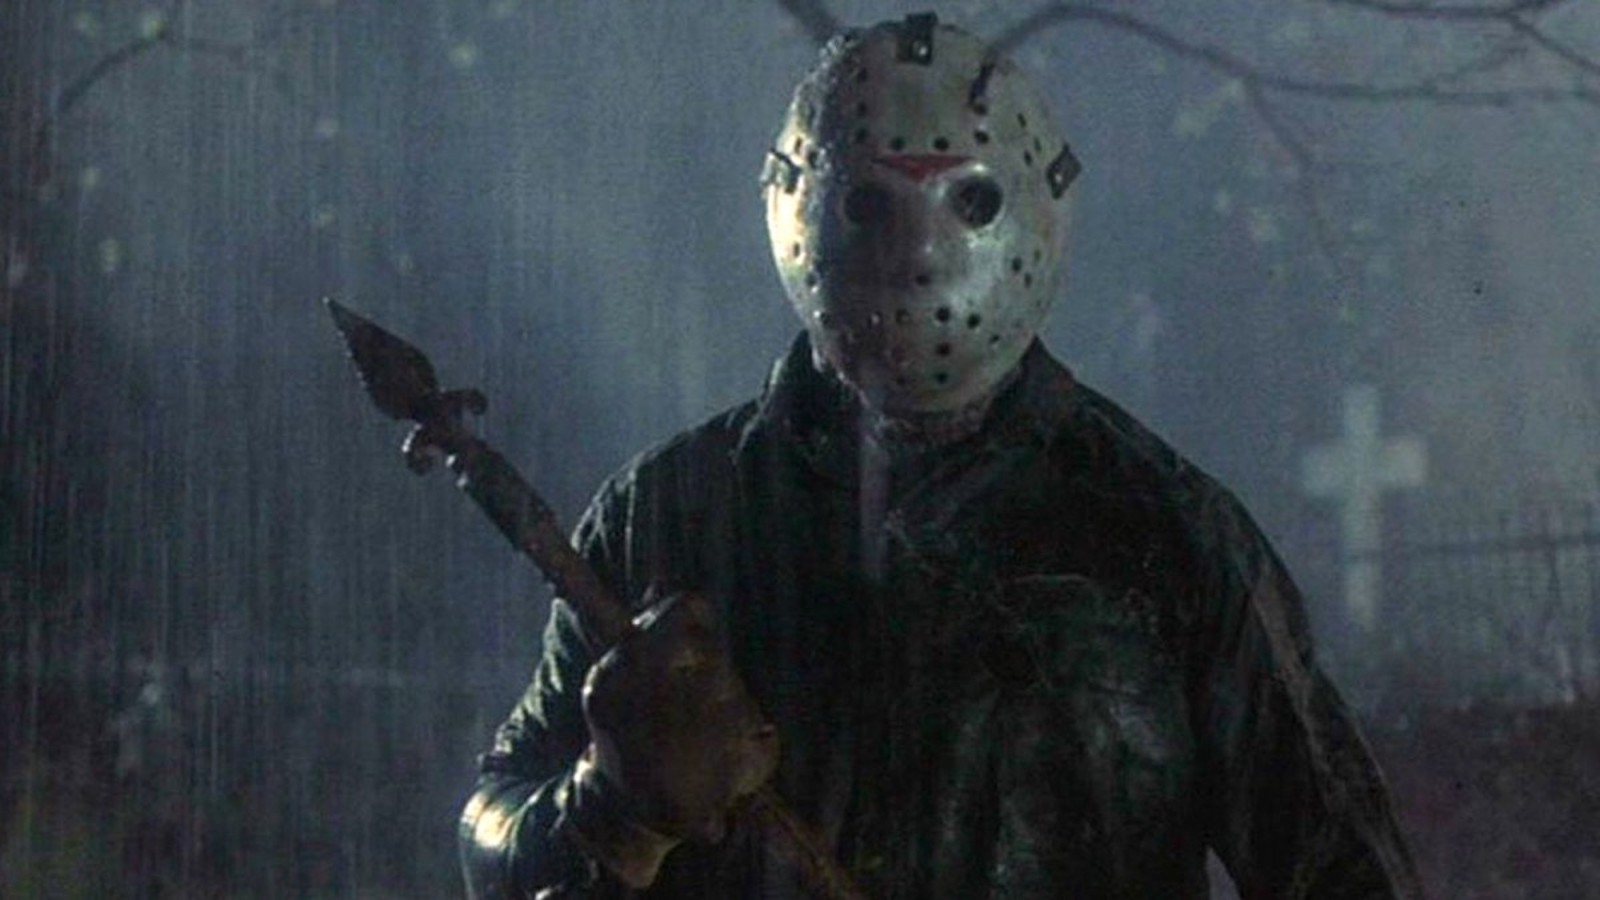 Venerdì 13: dopo Halloween e L'Esorcista, Blumhouse vuole resuscitare la saga di Jason